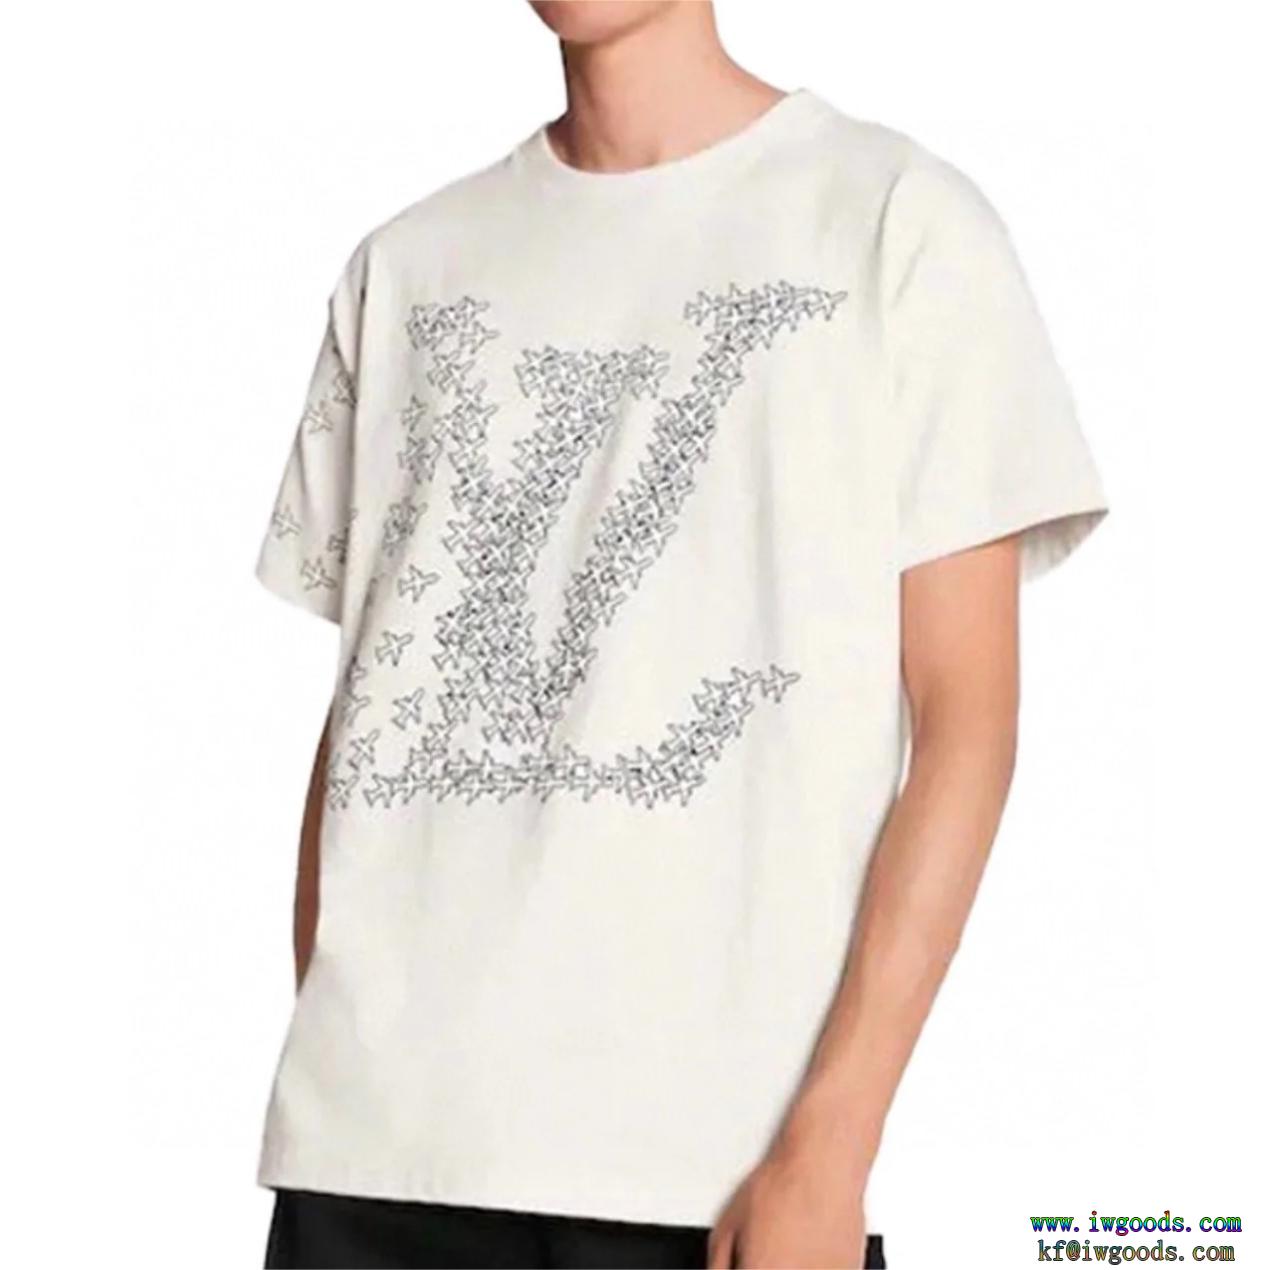 存在感は抜群累積売上額第1位獲得ブランド フェイク半袖Tシャツ【ユニセックス】ルイヴィトンLOUIS VUITTON